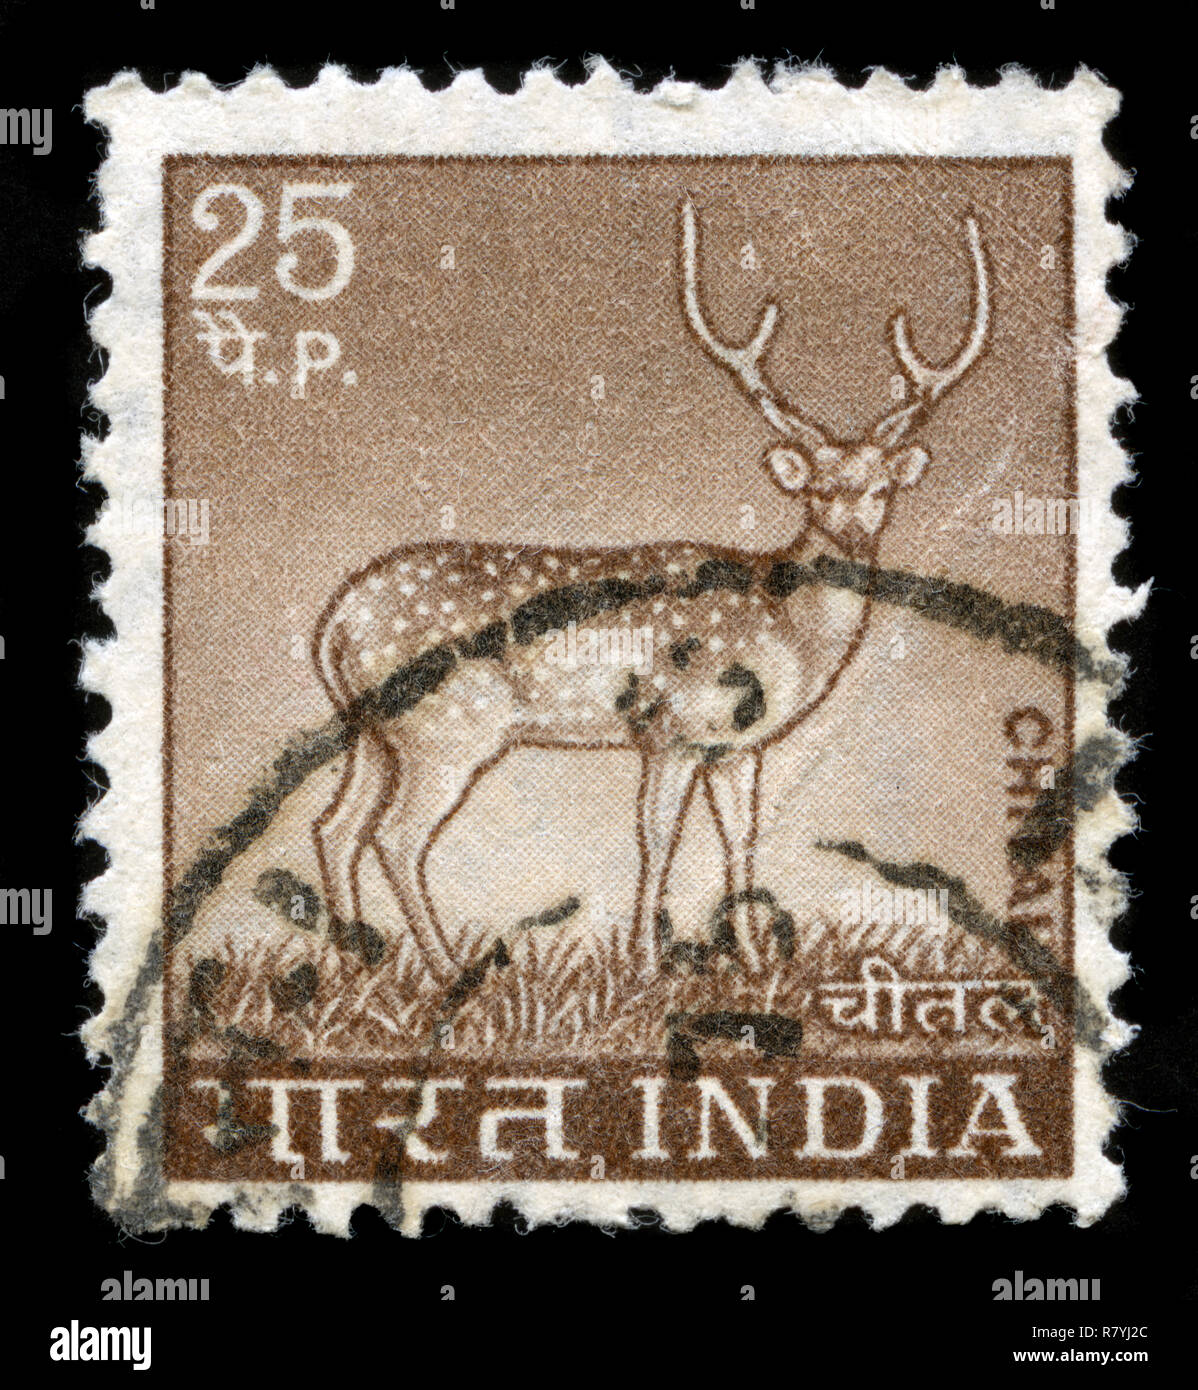 Timbre-poste de l'Inde dans le pays a publié en 1974 la série de motifs Banque D'Images